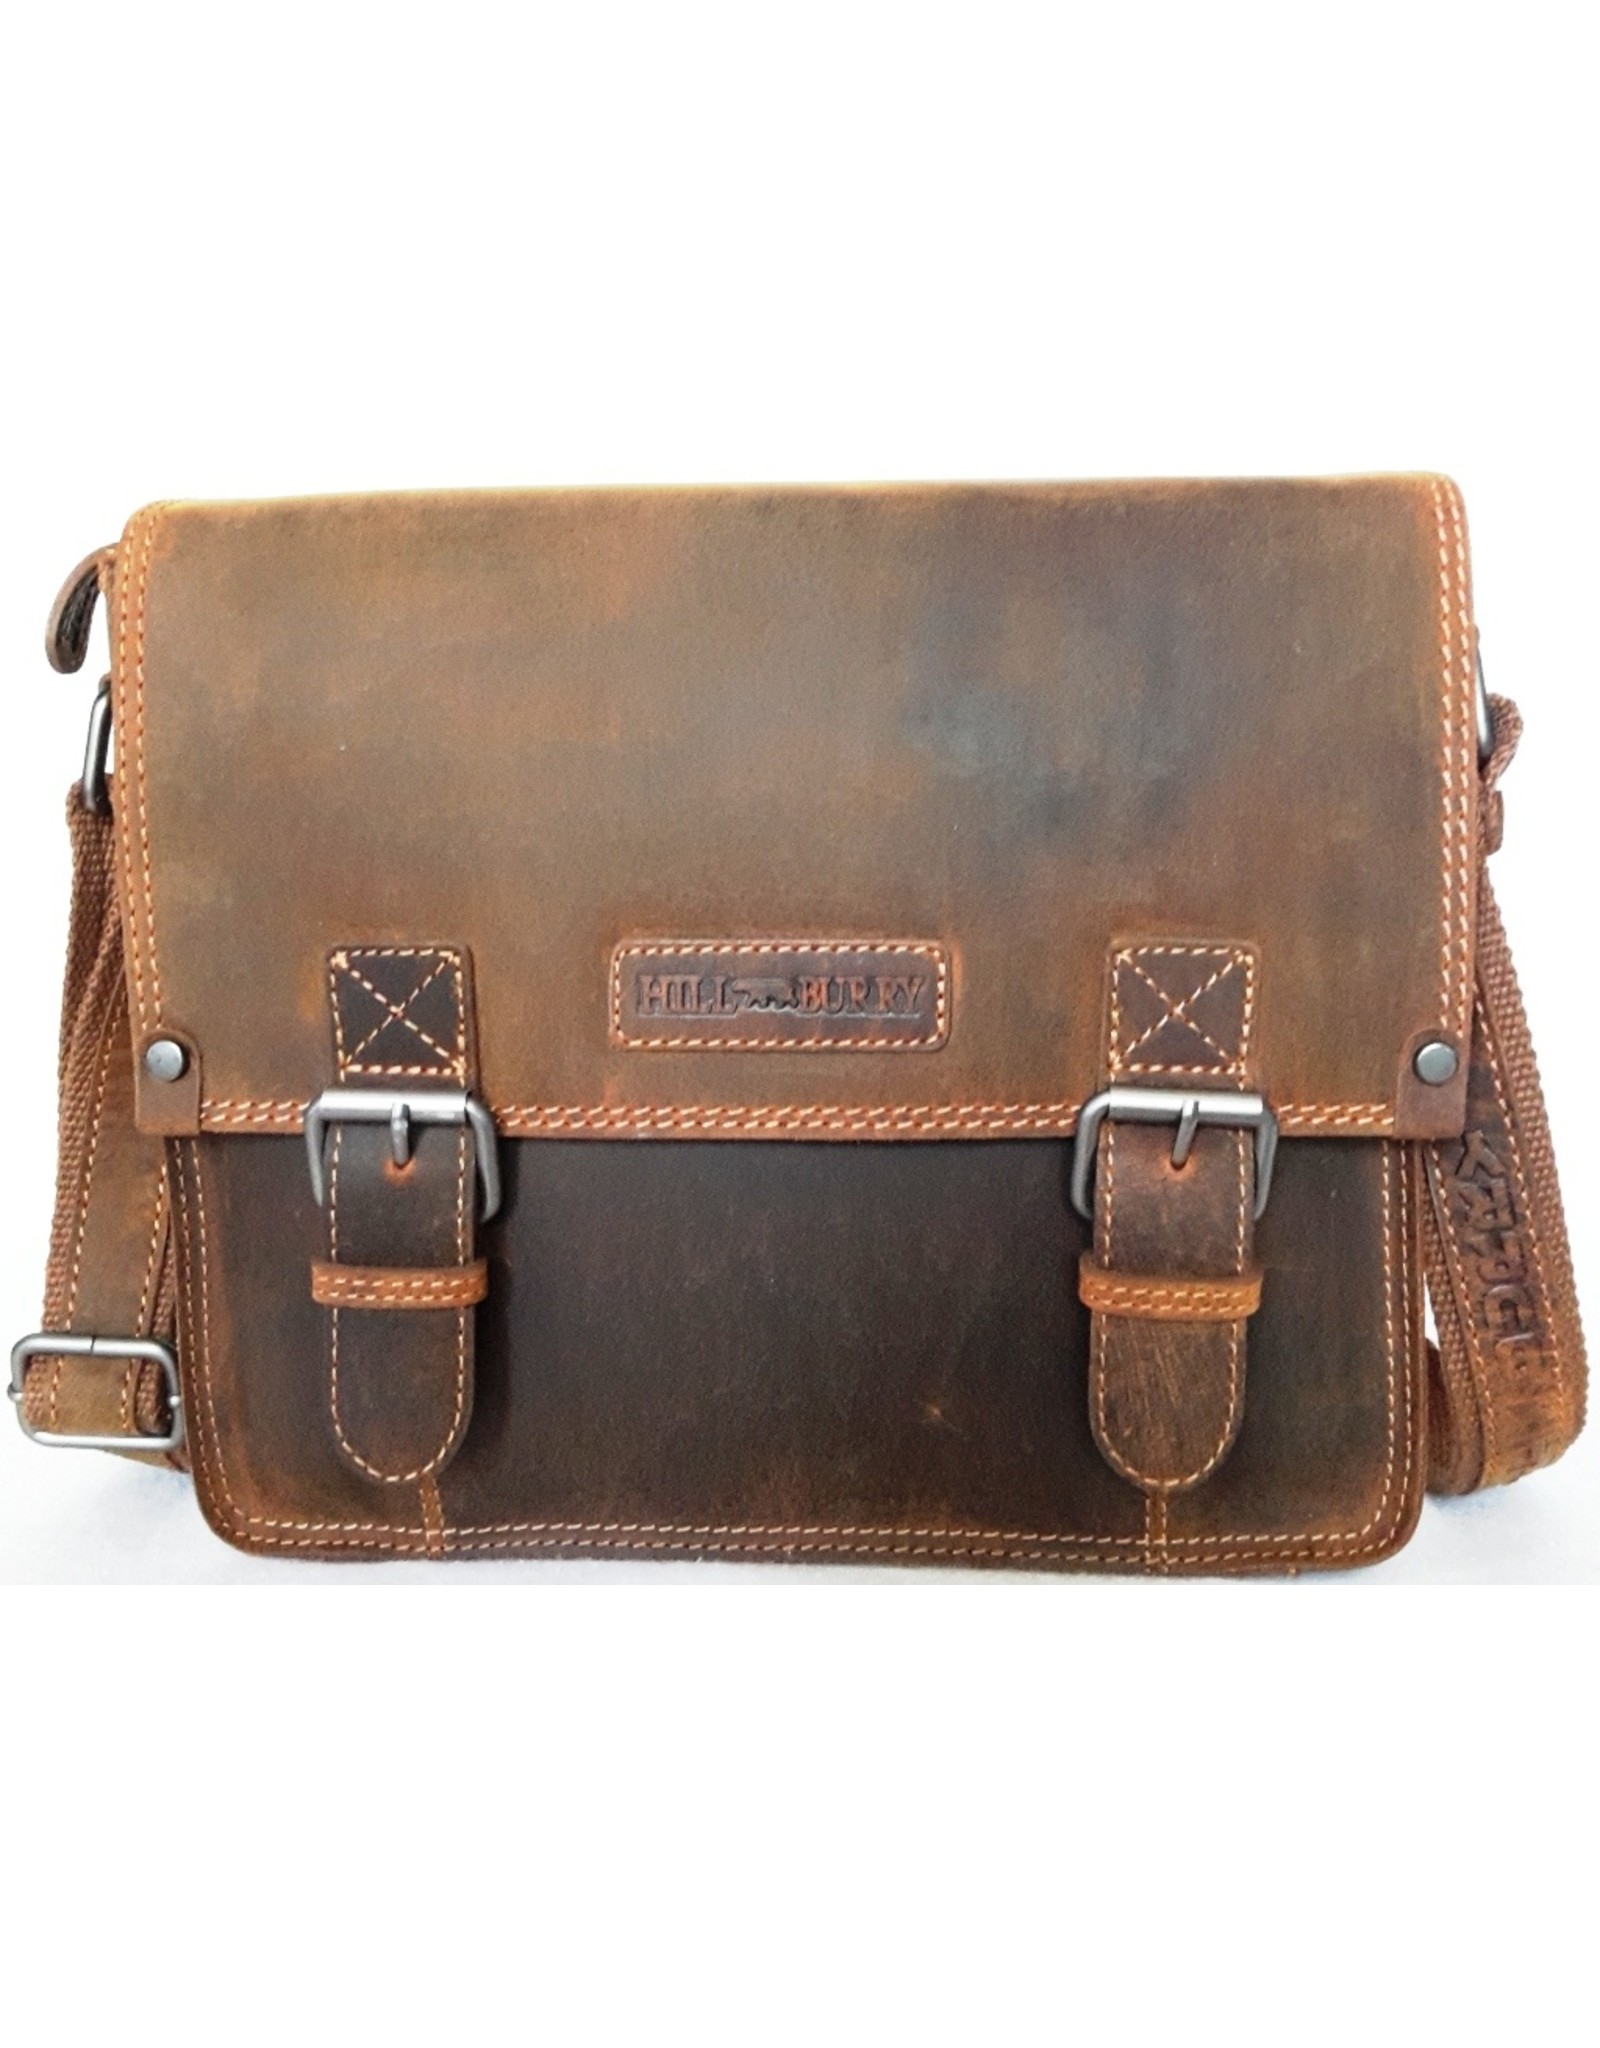 HillBurry Leather laptop bags - HillBurry Leather school bag vintage look (medium)